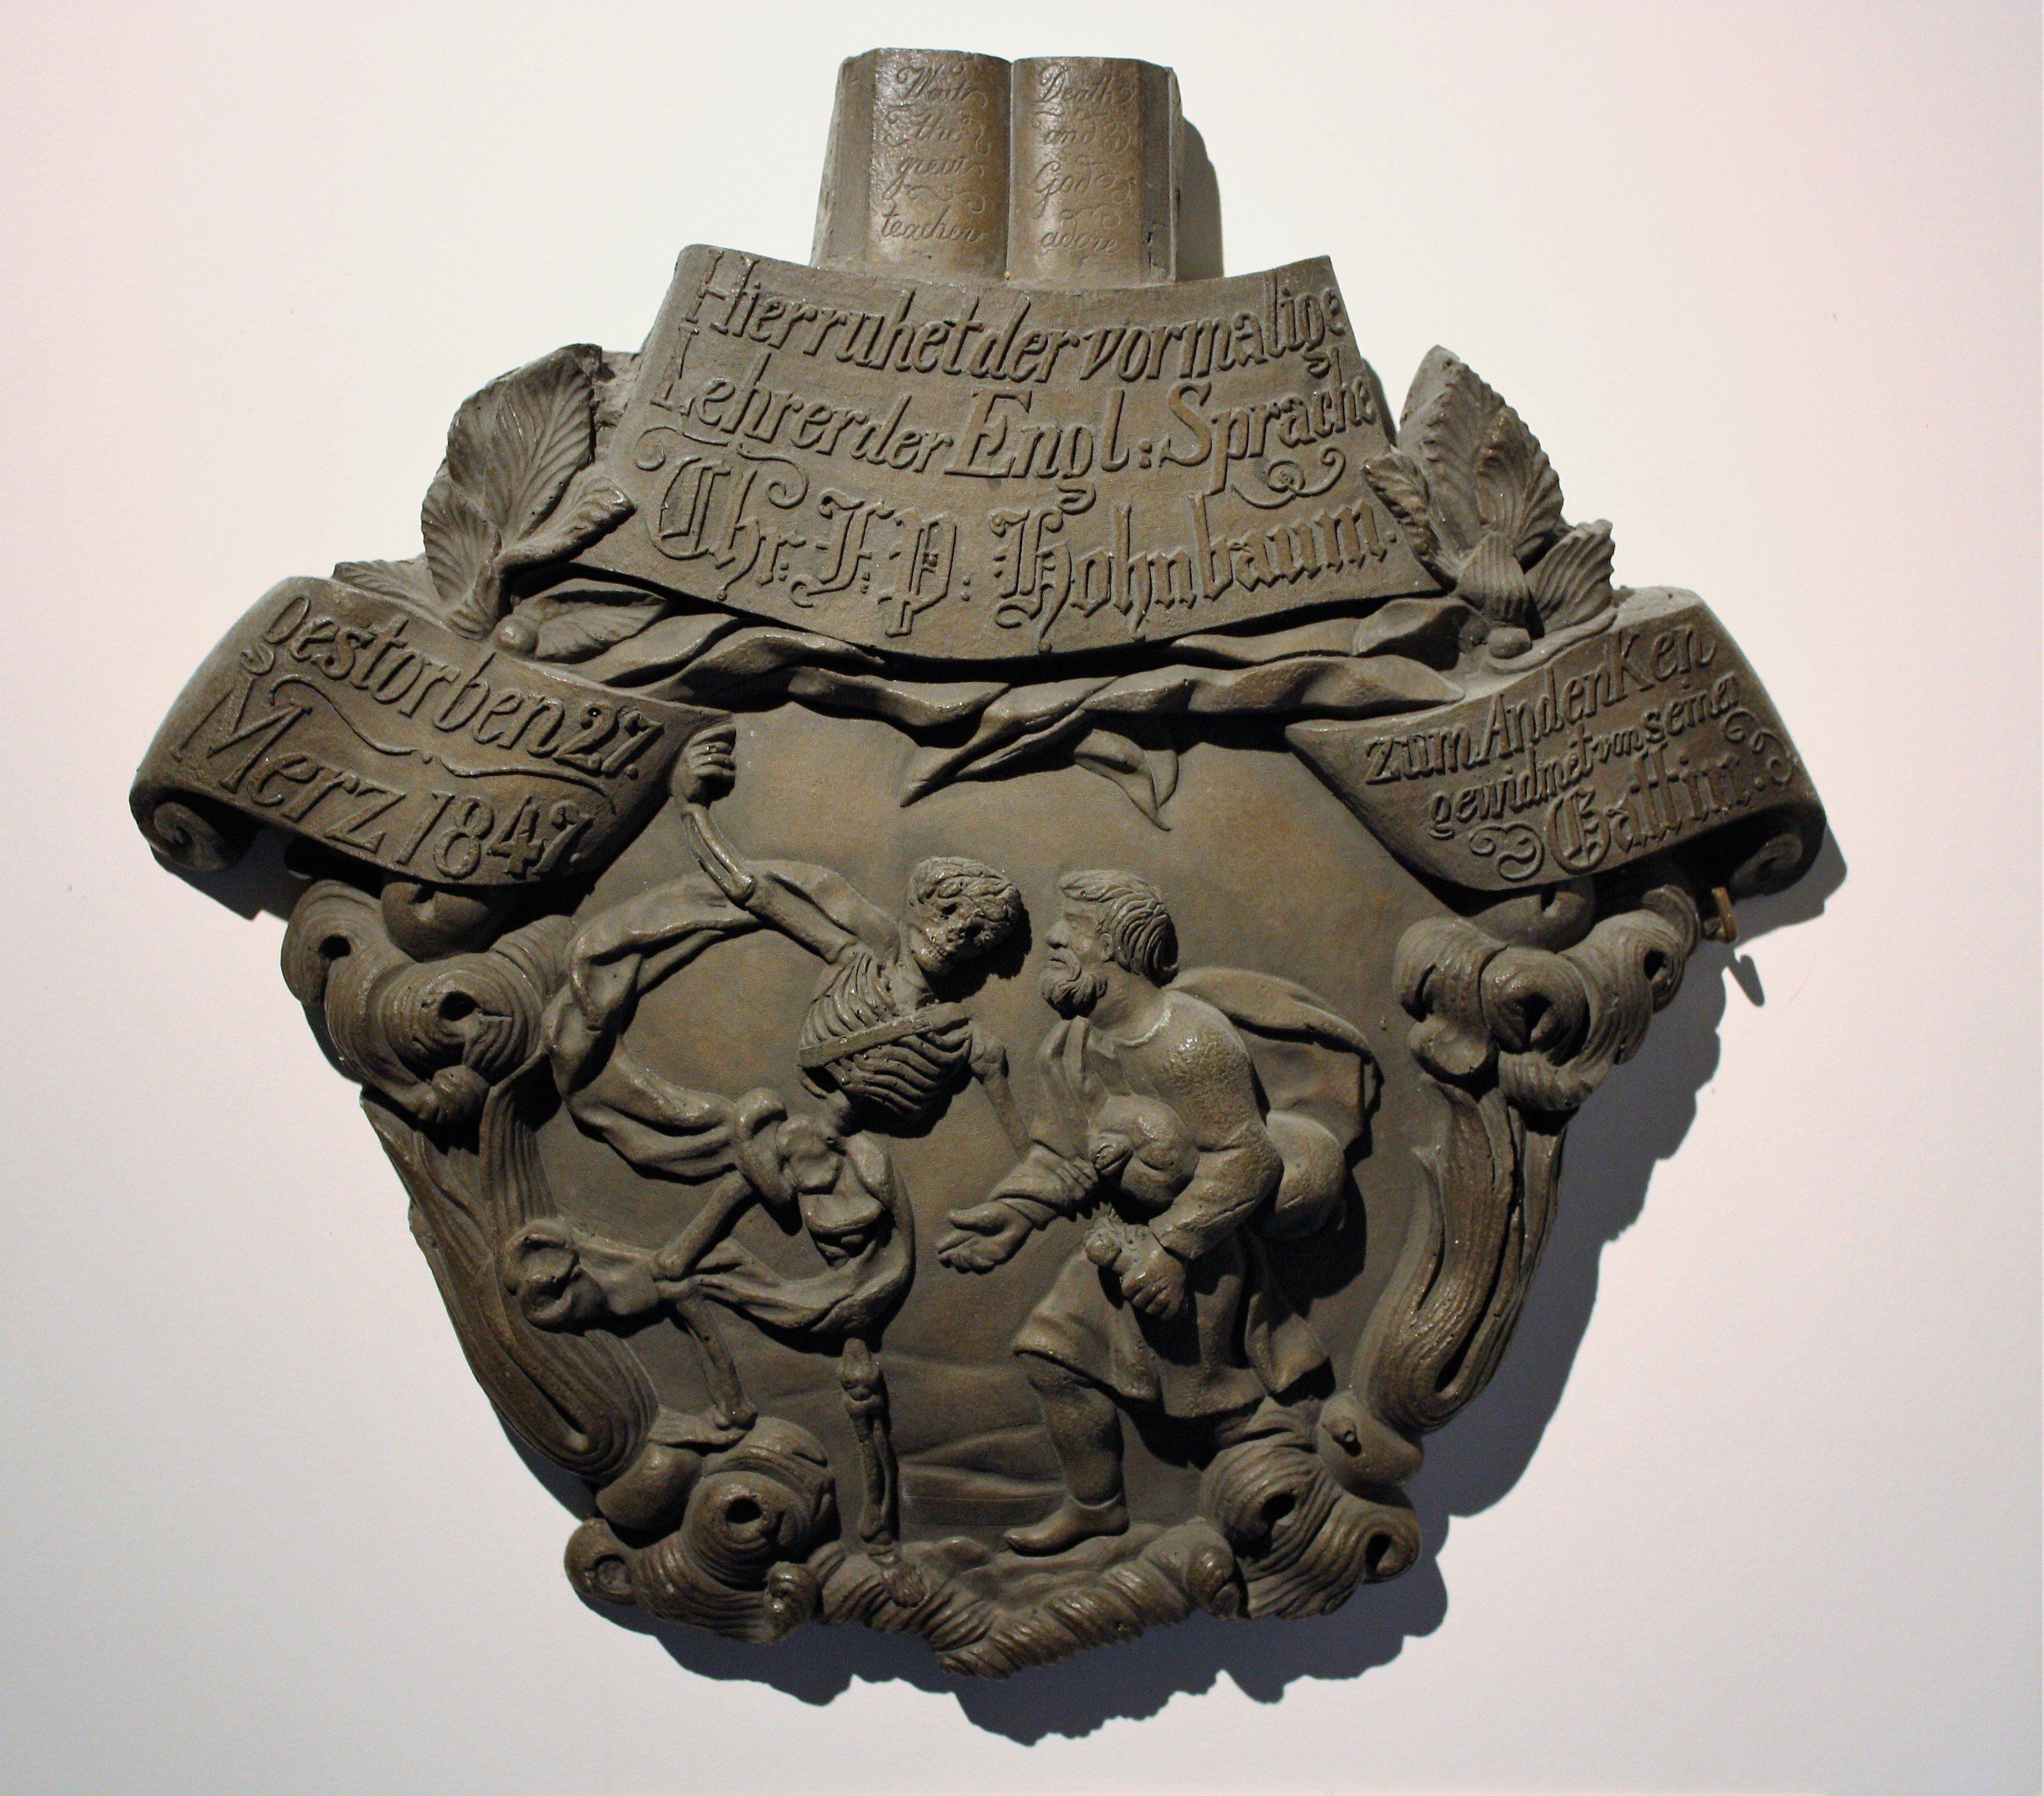 Epitaph mit Totentanz-Darstellung für "Chr. F. P. Hohnbaum" (Museum für Sepulkralkultur CC BY)